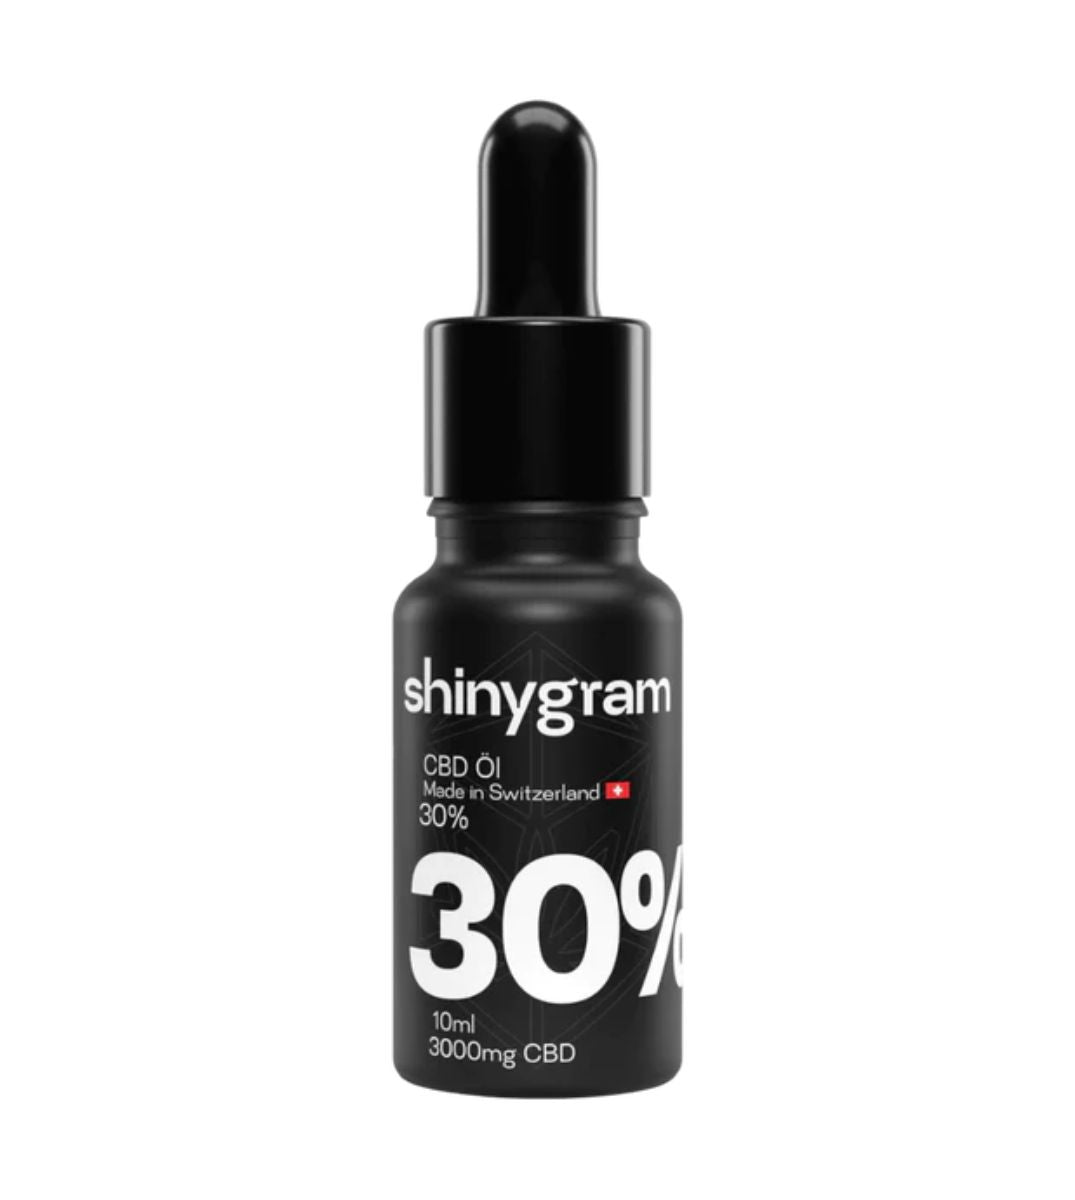 Flasche von Shinygram CBD Öl mit 30% Konzentration, 10ml Flasche mit 3000mg CBD, vor einem neutralen Hintergrund für eine klare Produktansicht.